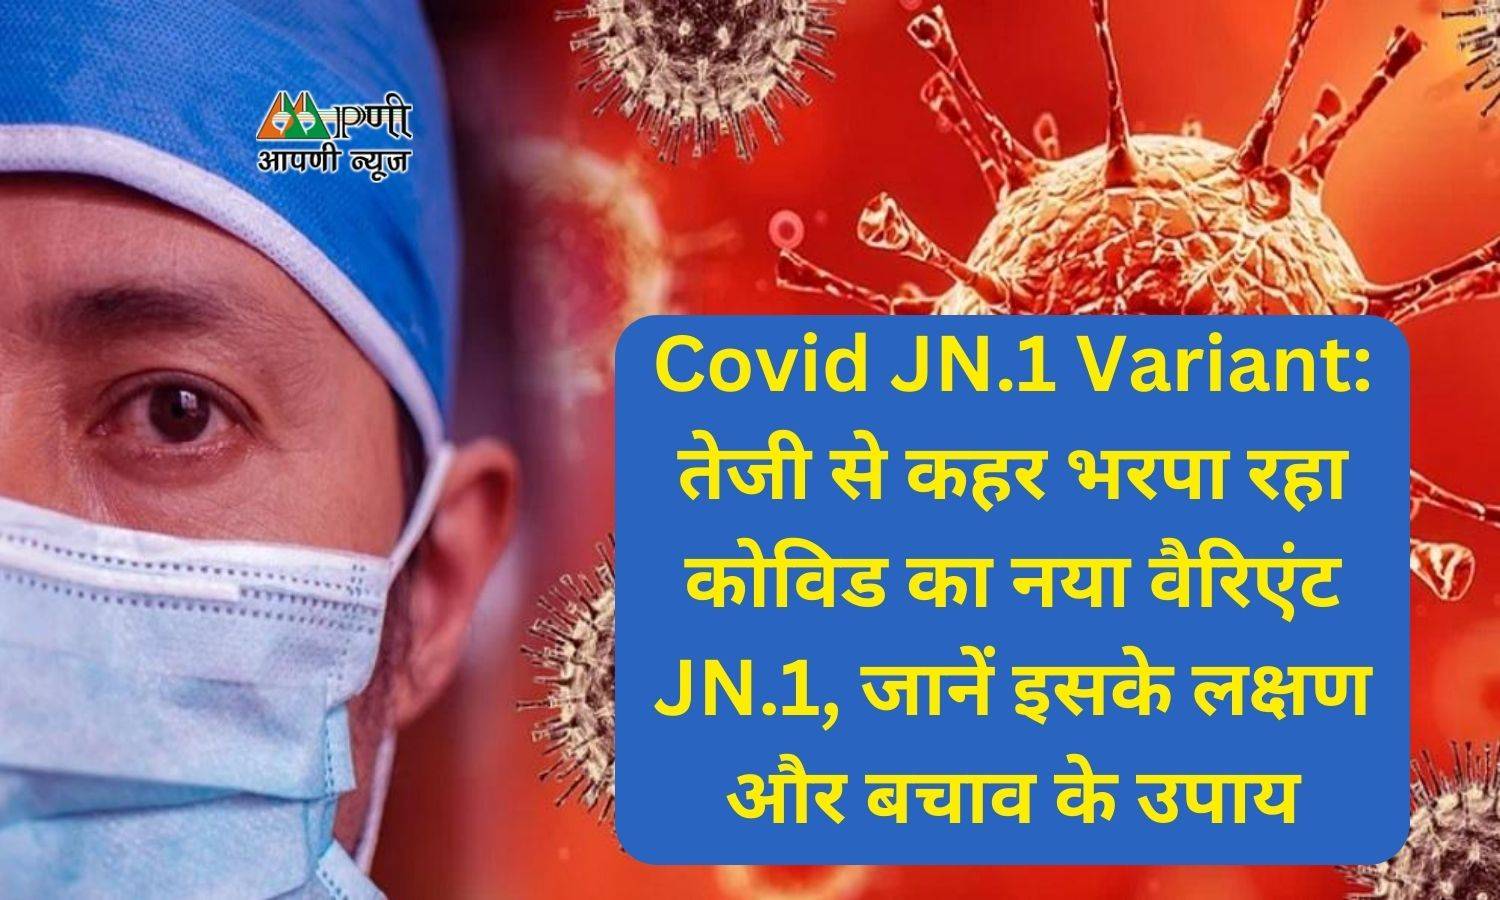 Covid JN.1 Variant: तेजी से कहर भरपा रहा कोविड का नया वैरिएंट JN.1, जानें इसके लक्षण और बचाव के उपाय